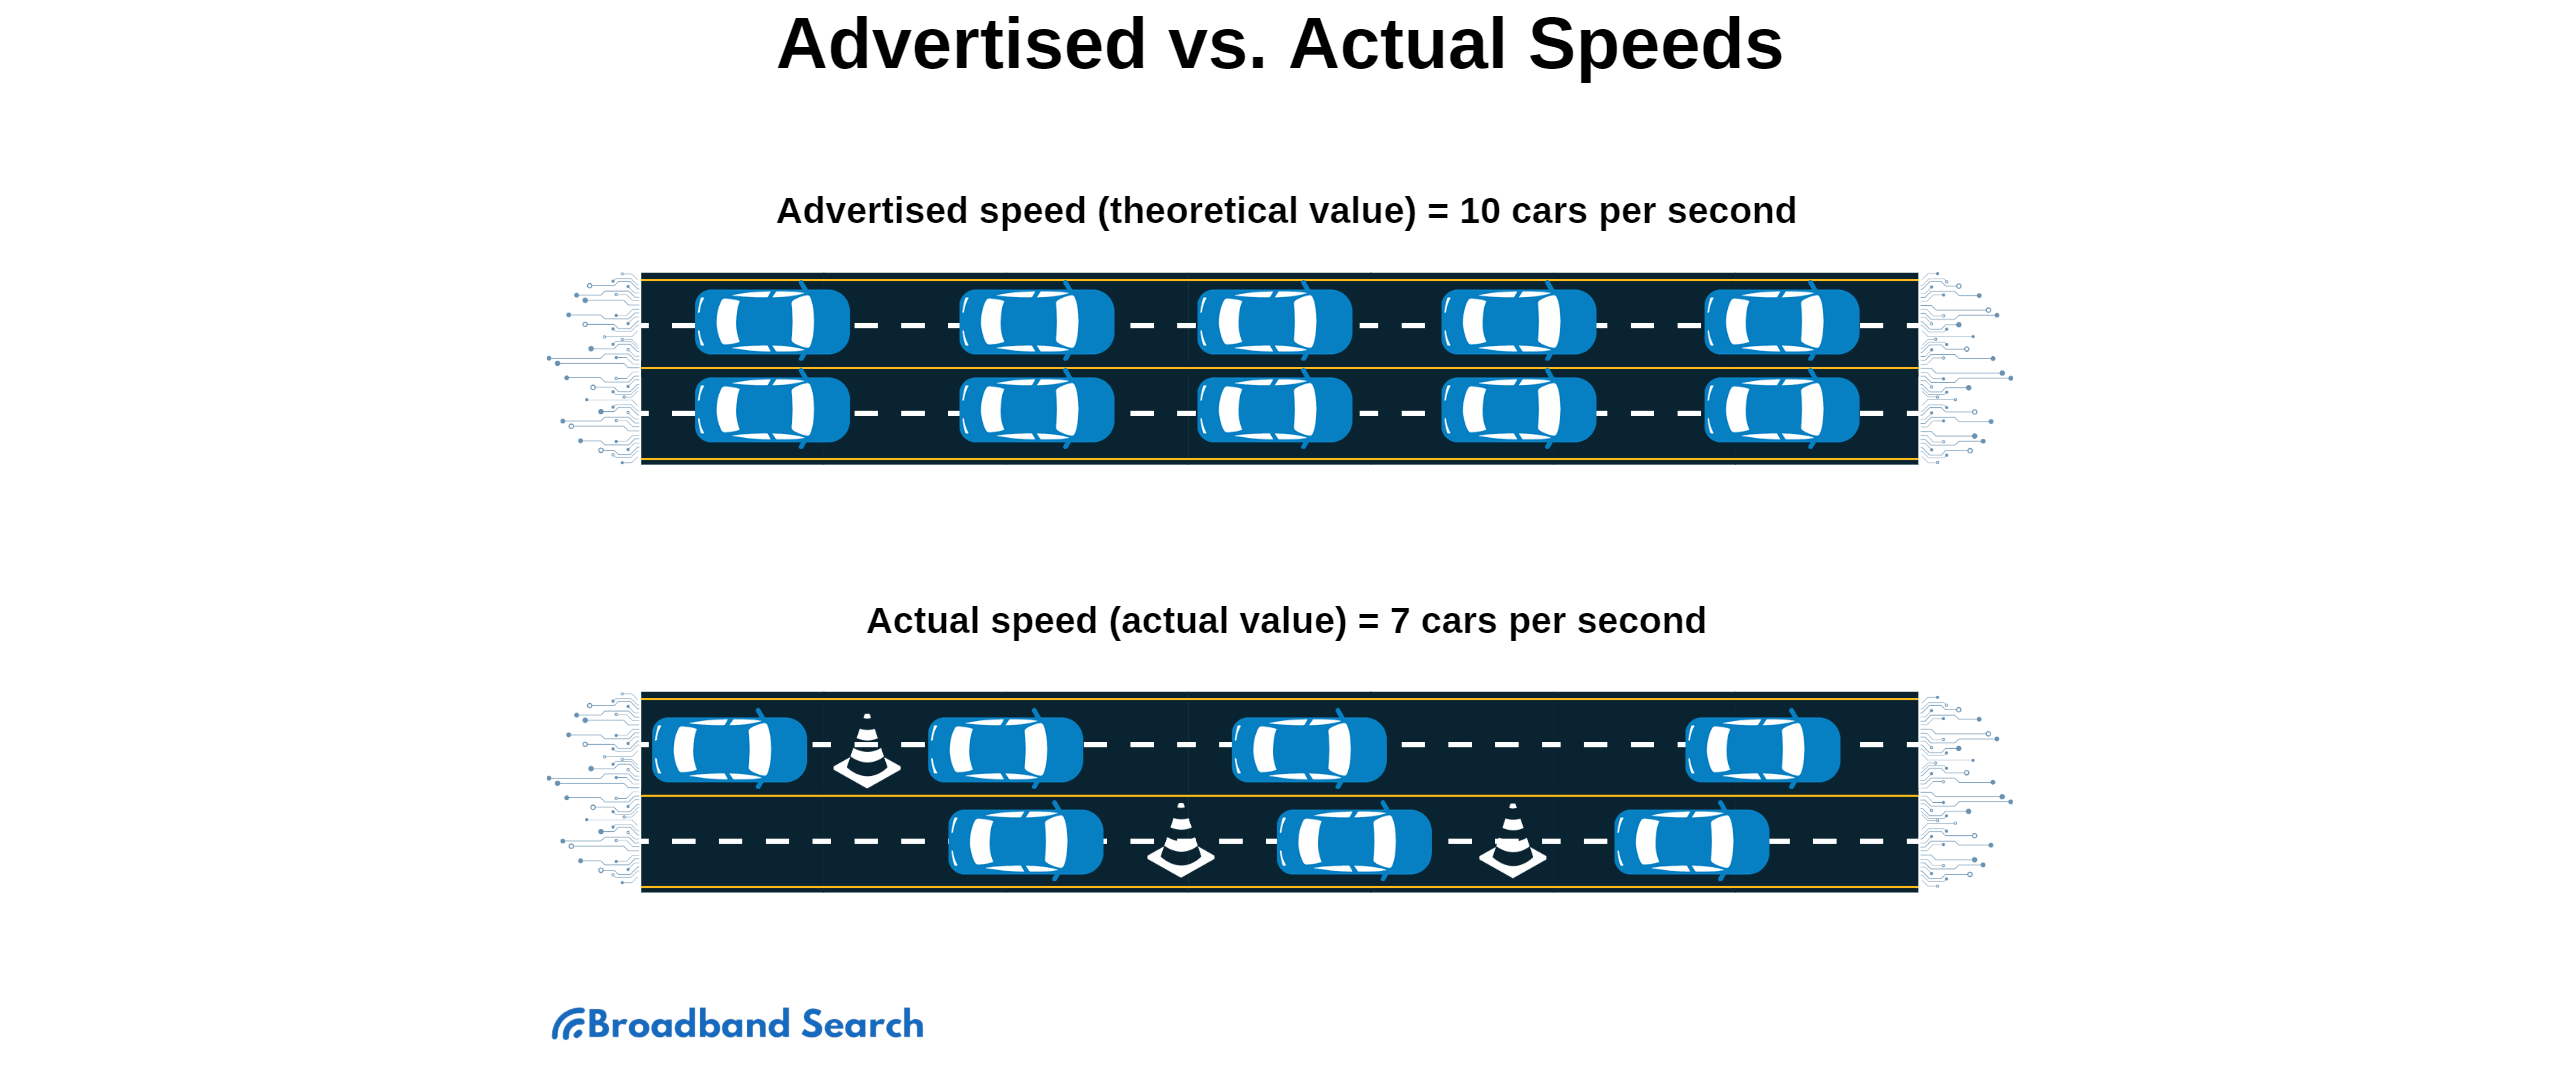 Advertised vs. Actual speed analogy using traffic lanes